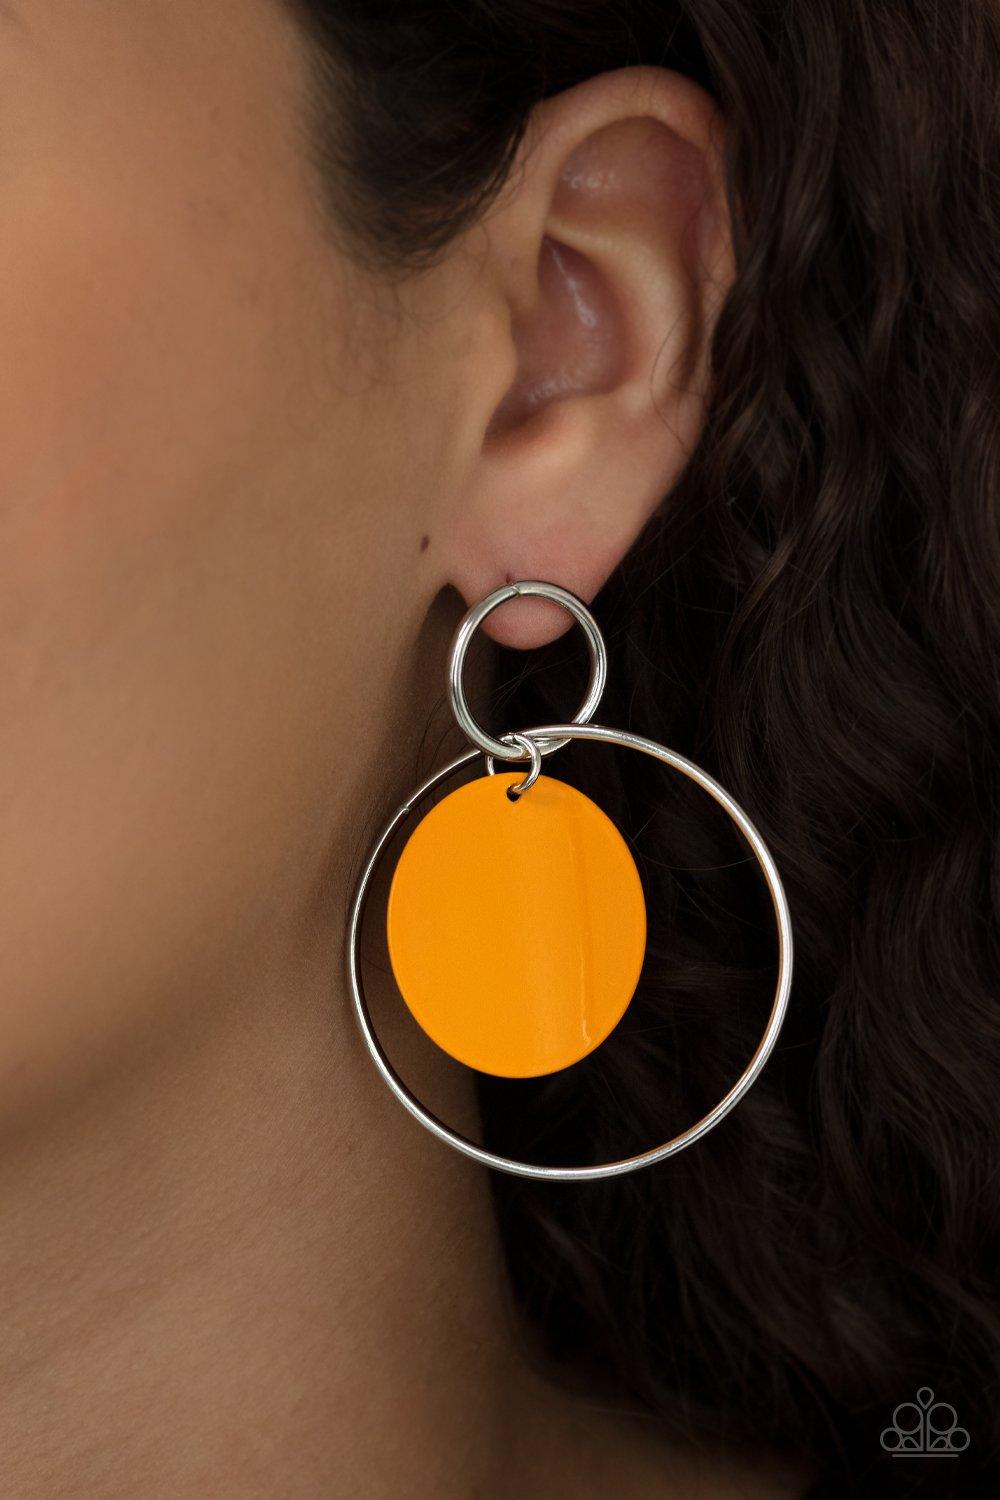 POP, Look, and Listen - Orange Earrings - Jewelry By Bretta